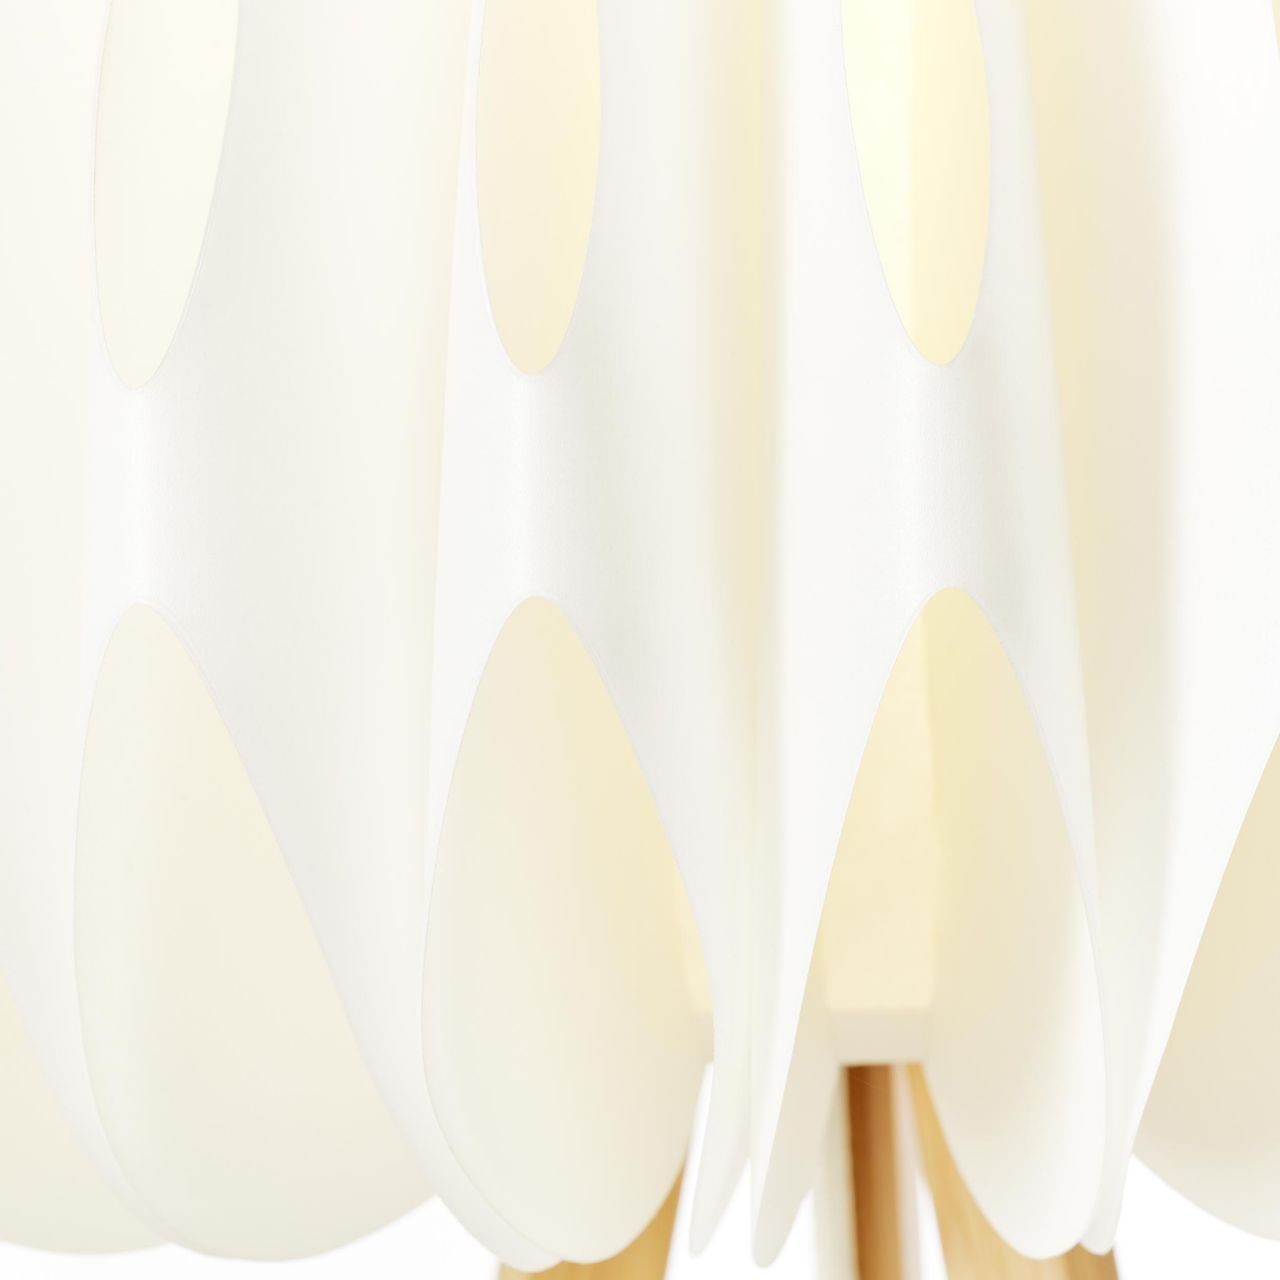 Brilliant Stehlampe Lampe, Standleuchte, Bambus/Kunststoff dreibeinig Inna, holz Inna hell/weiß